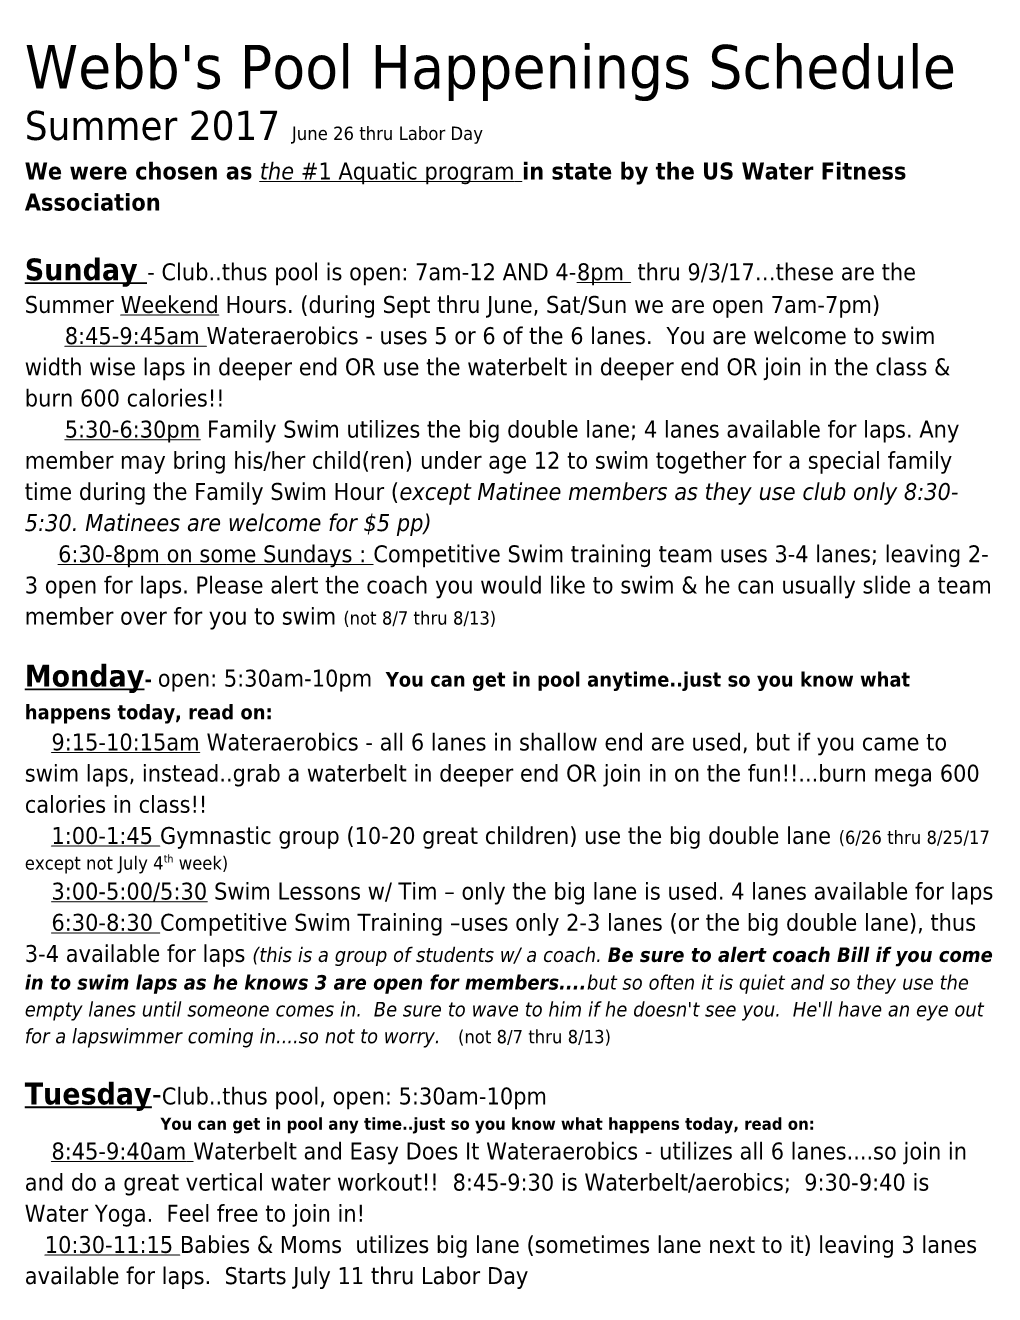 Webb's Pool Happenings Schedule Summer 2017June 26 Thru Labor Day